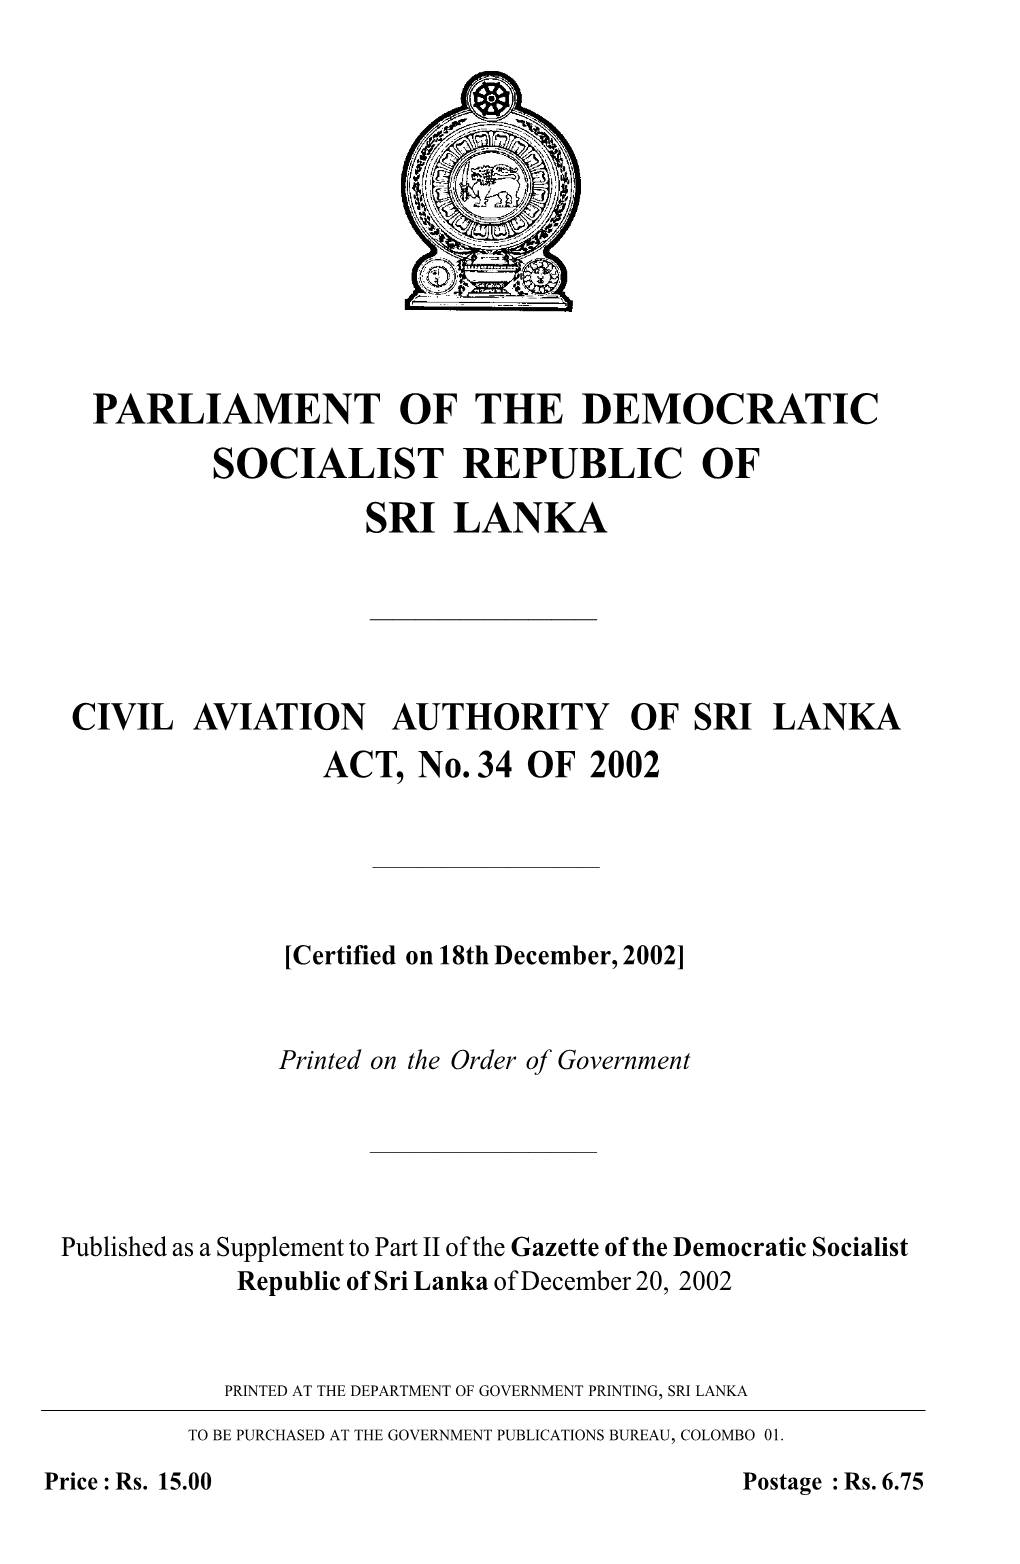 Civil Aviation Authority of Sri Lanka Act No 34 of 2002